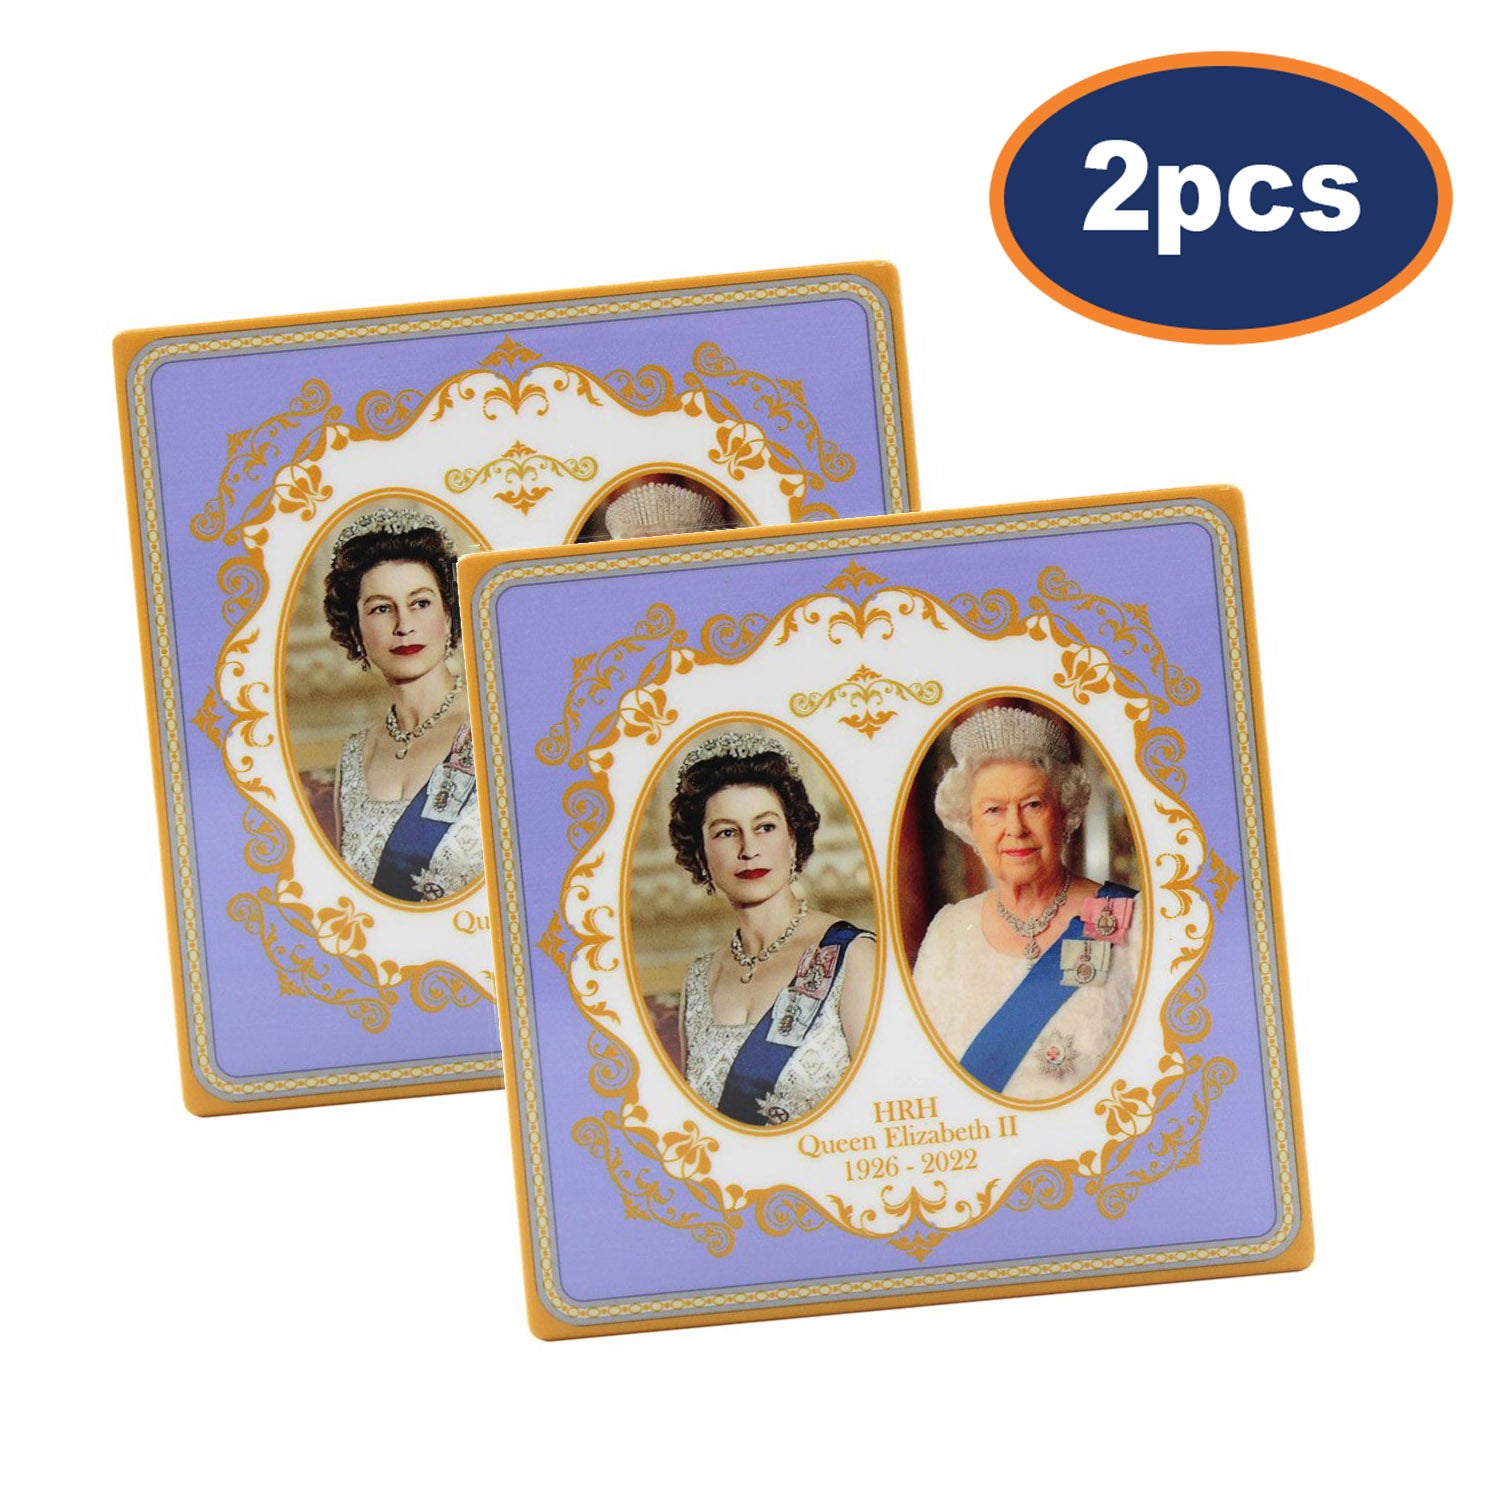 2pcs Queen Elizabeth II Ceramic Coaster